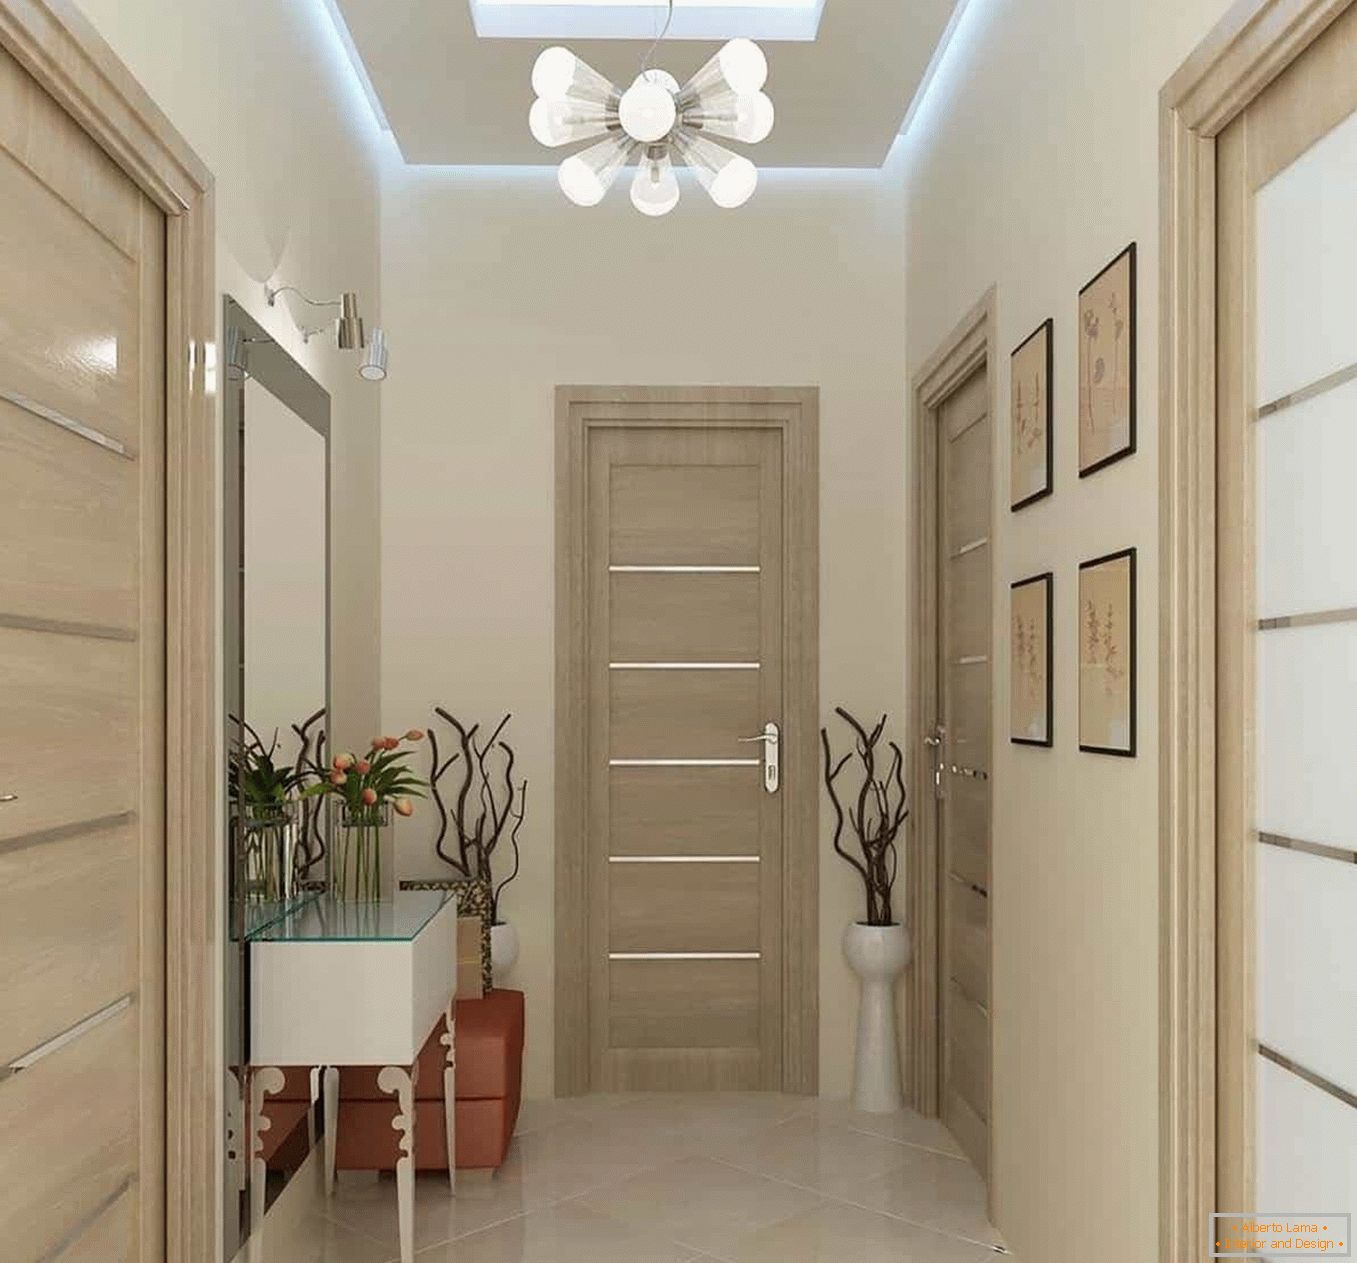 Light Korridor, eine Kombination von Farben von Wänden und Türen